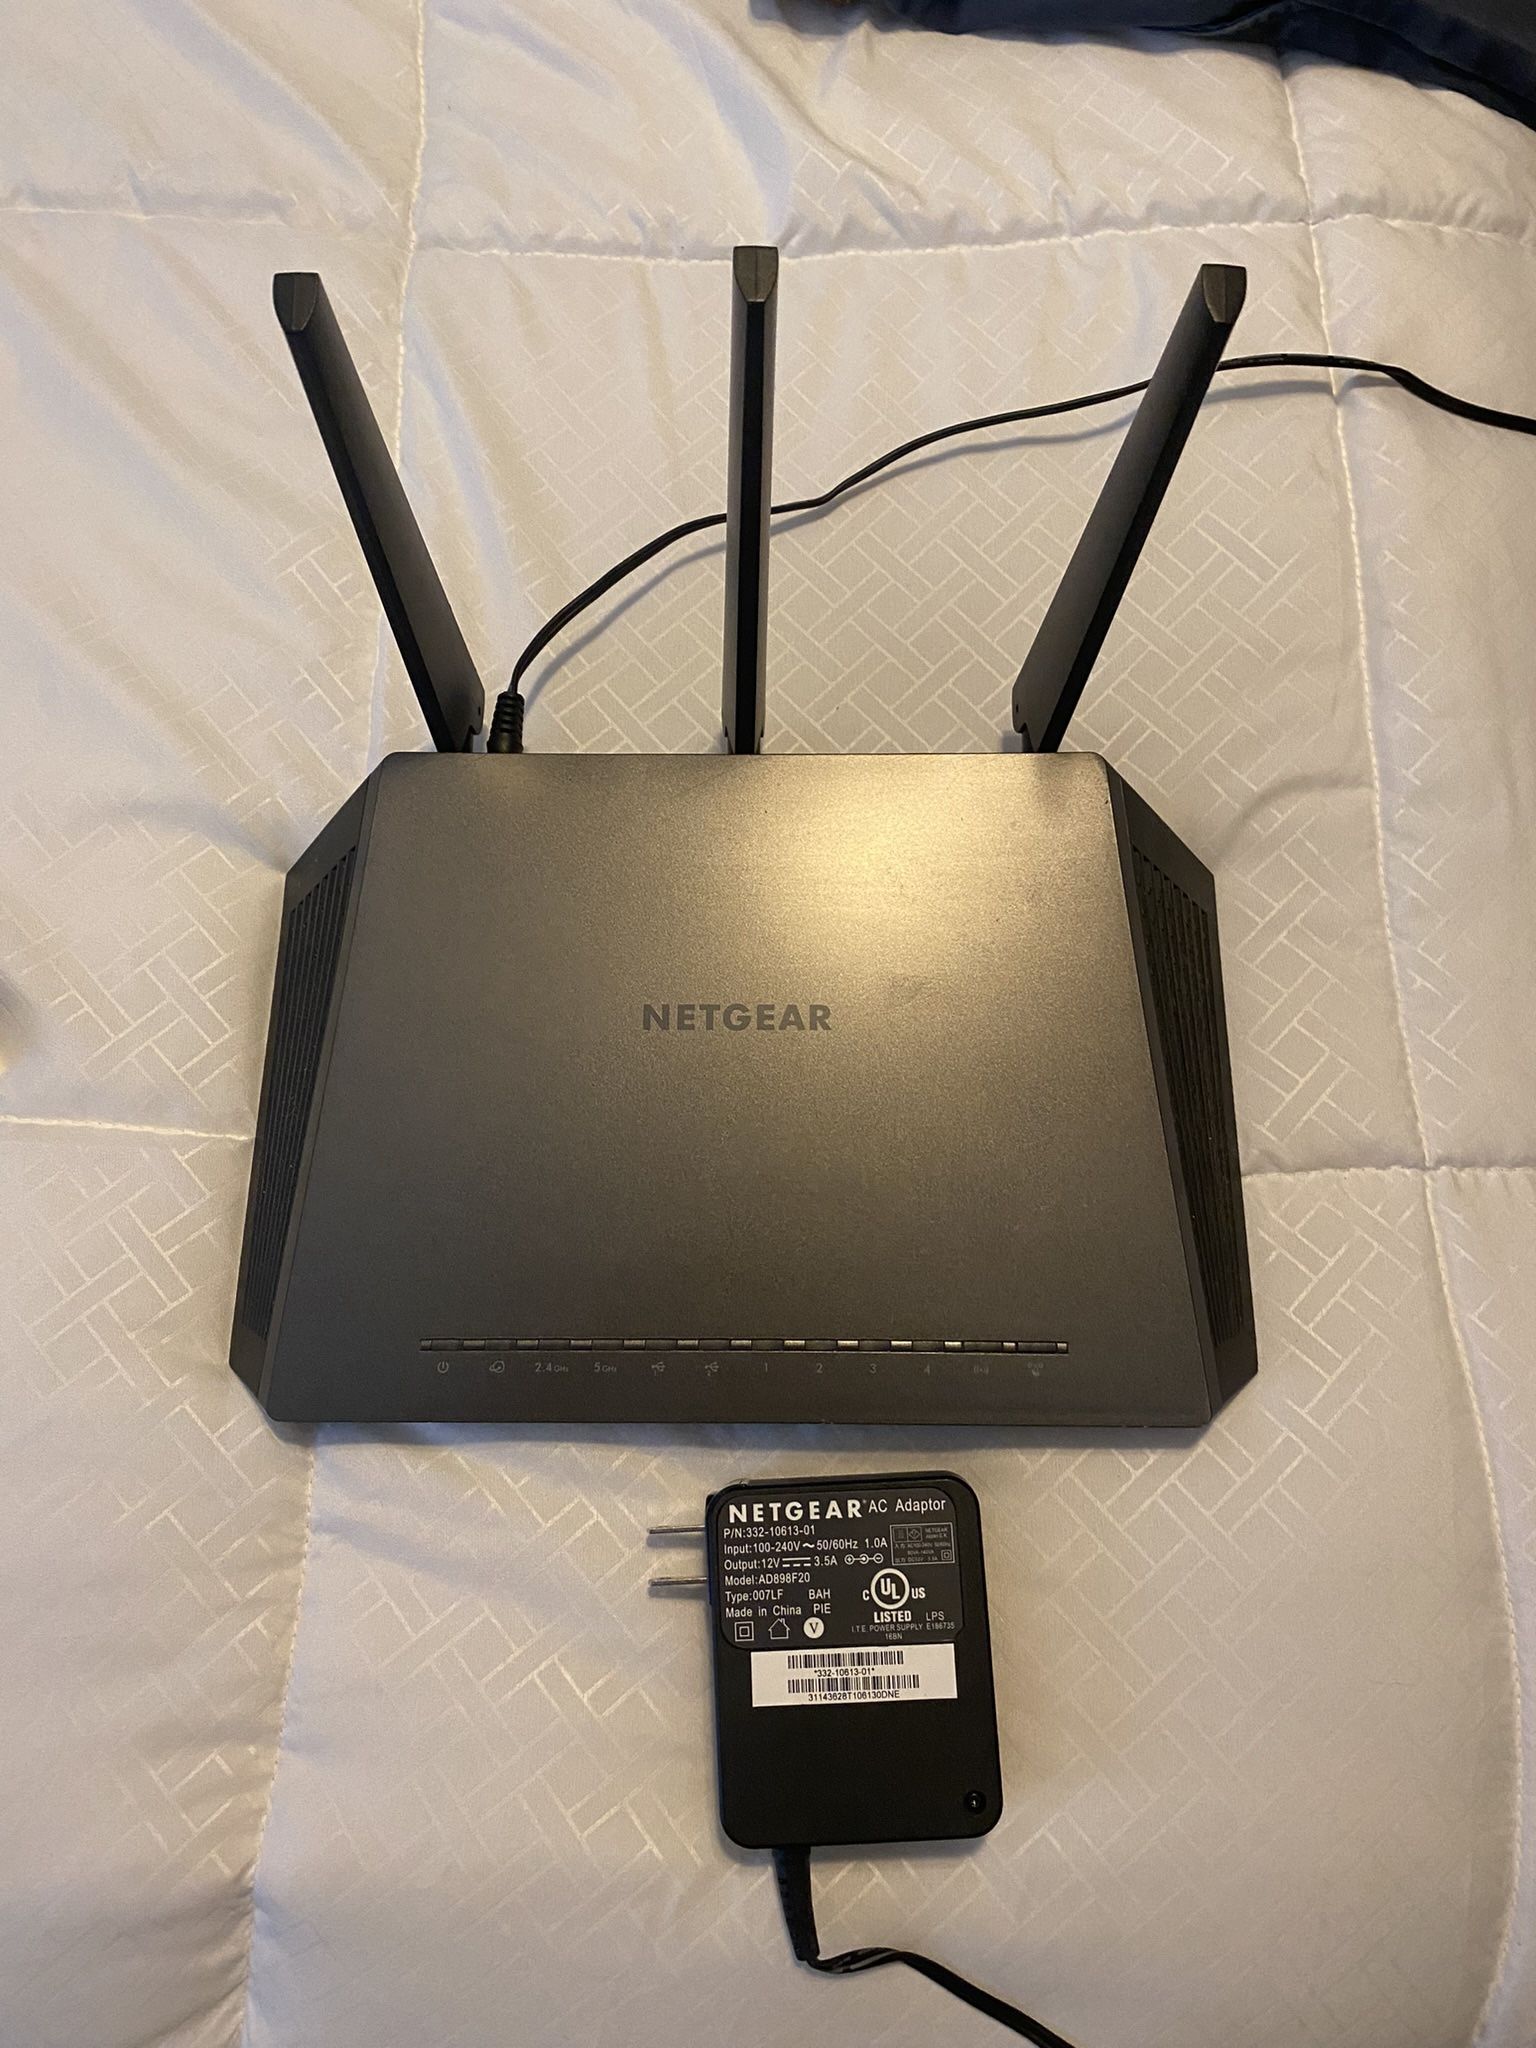 Netgear Nighthawk AC1900 Smart Wifi Router; Model R7000